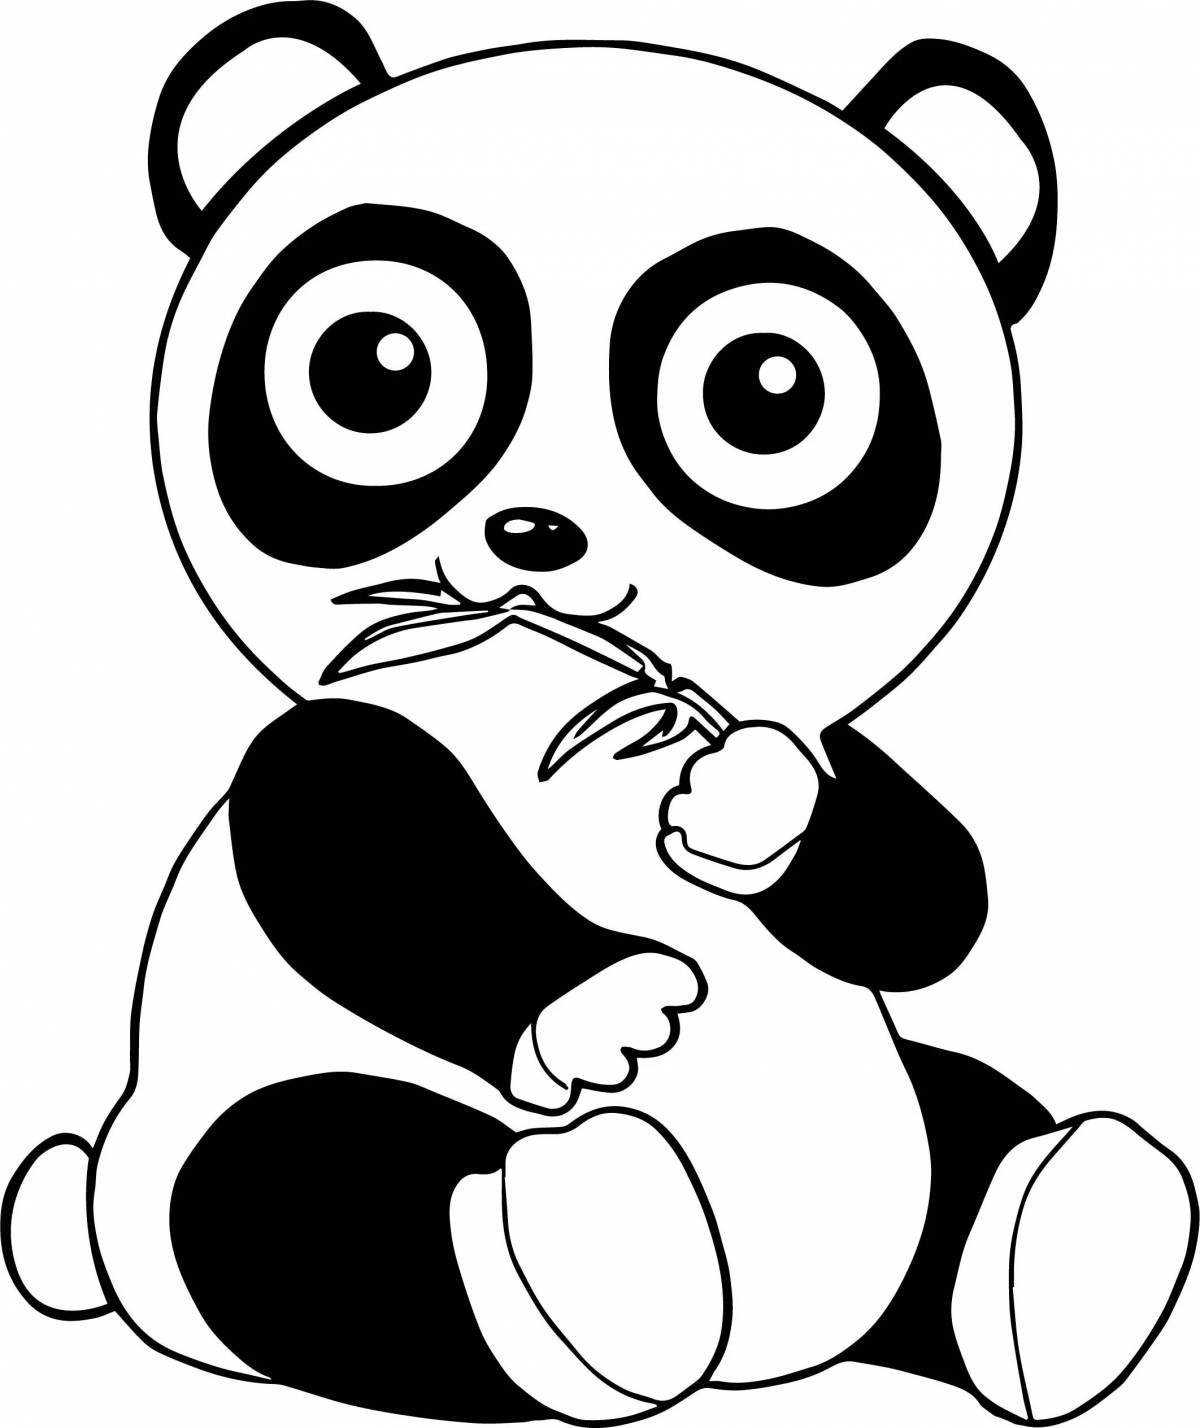 Laughing cute panda coloring book